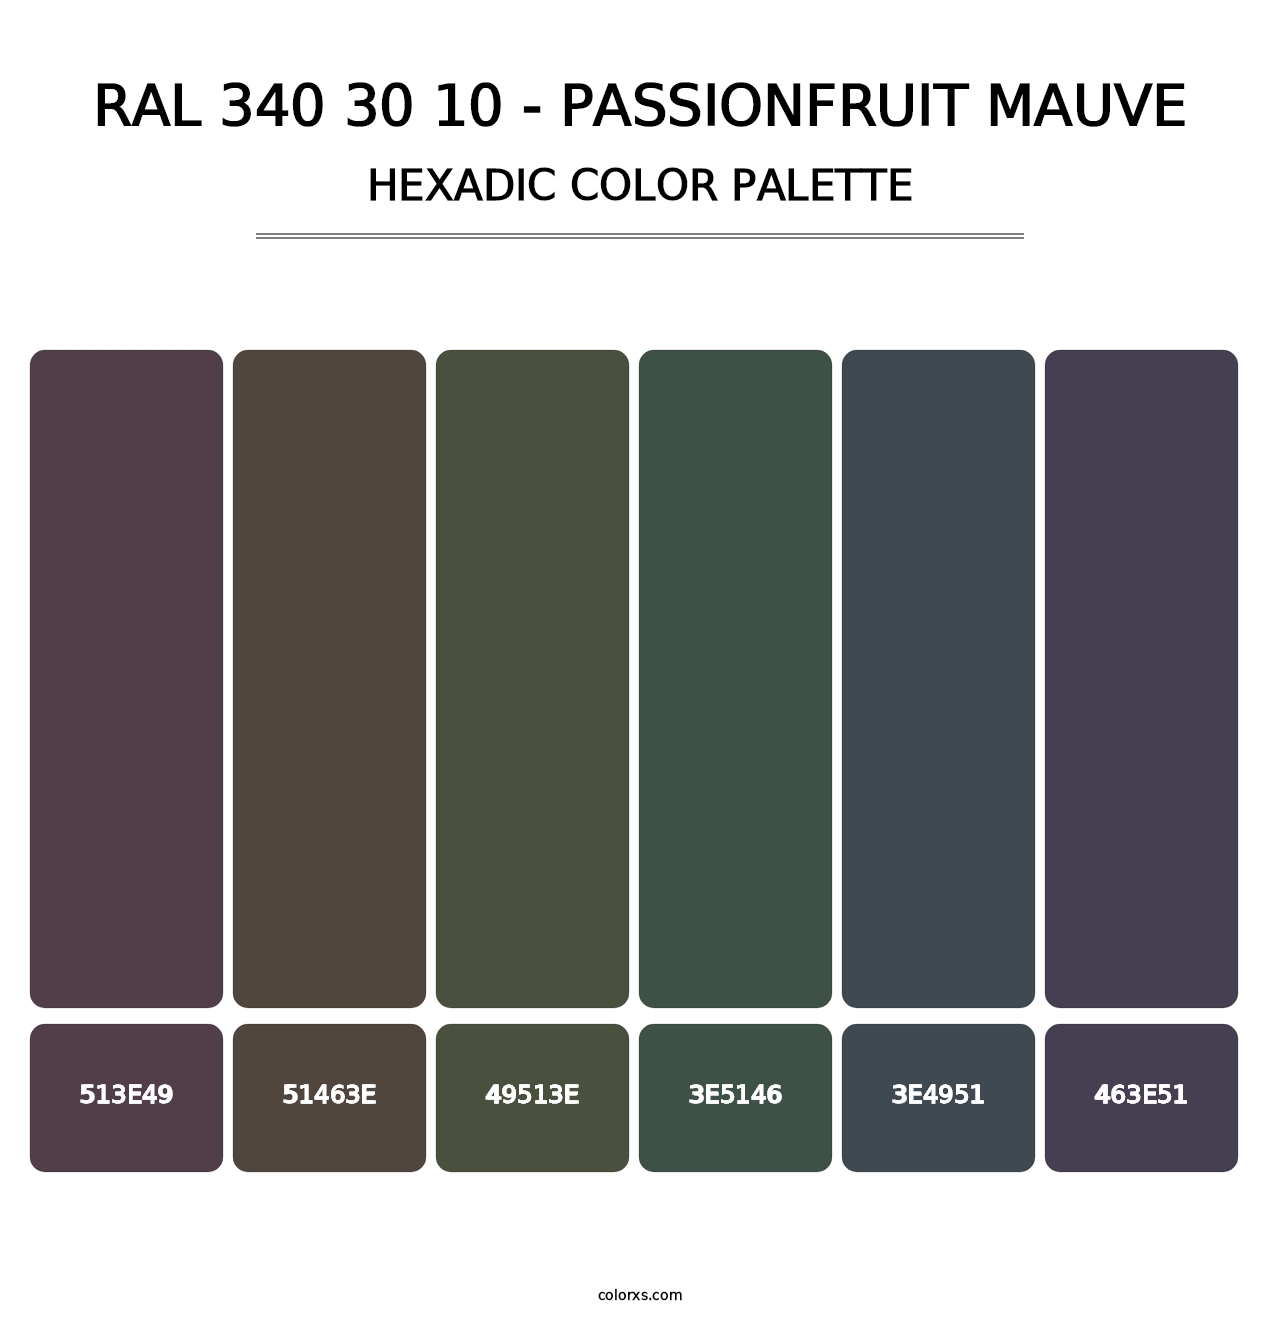 RAL 340 30 10 - Passionfruit Mauve - Hexadic Color Palette